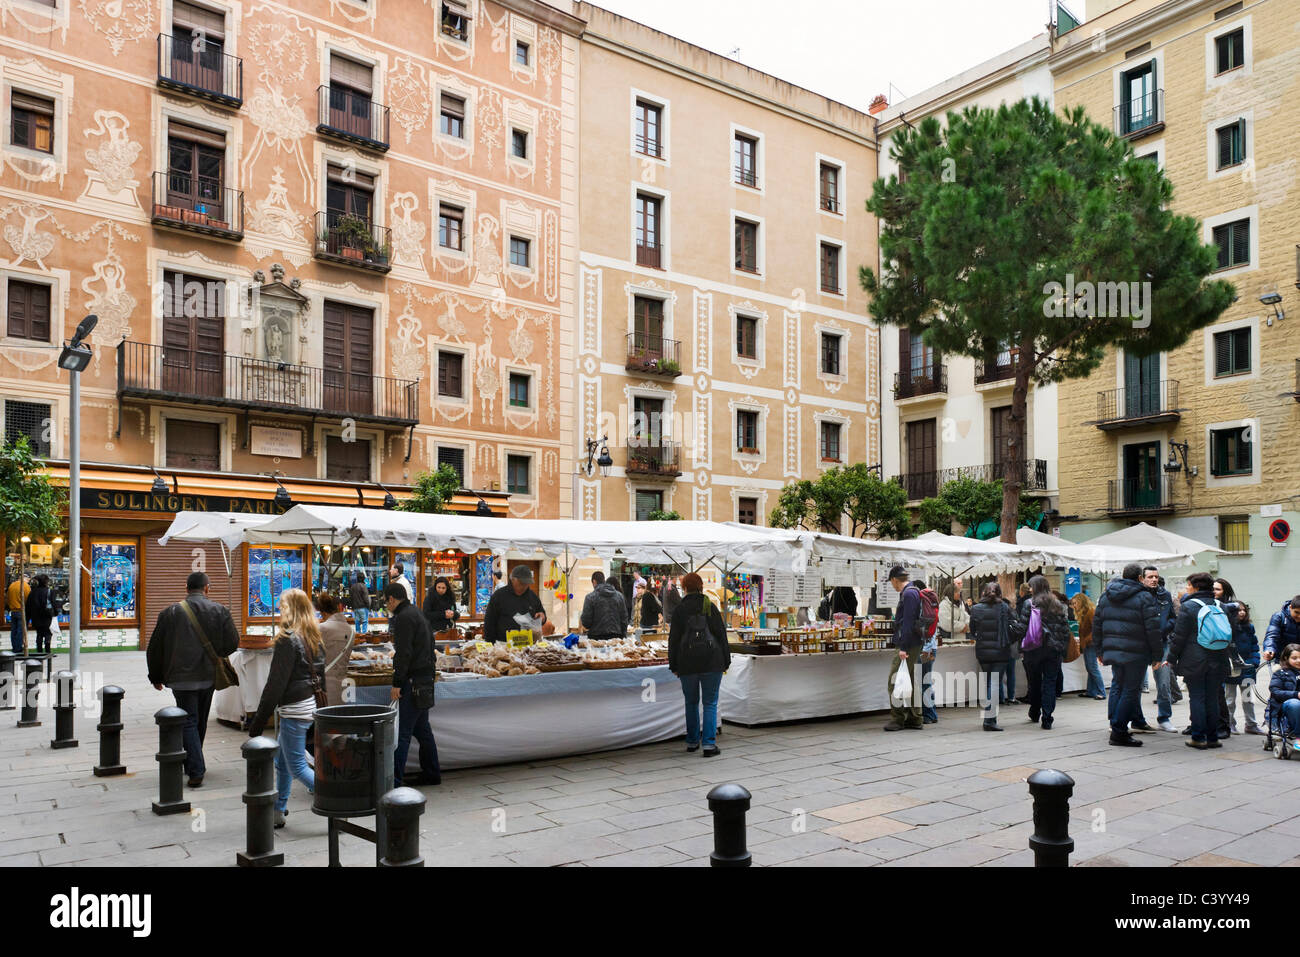 Les étals du marché de la plaça del pi dans le quartier gothique, Barcelone, Catalogne, Espagne Banque D'Images